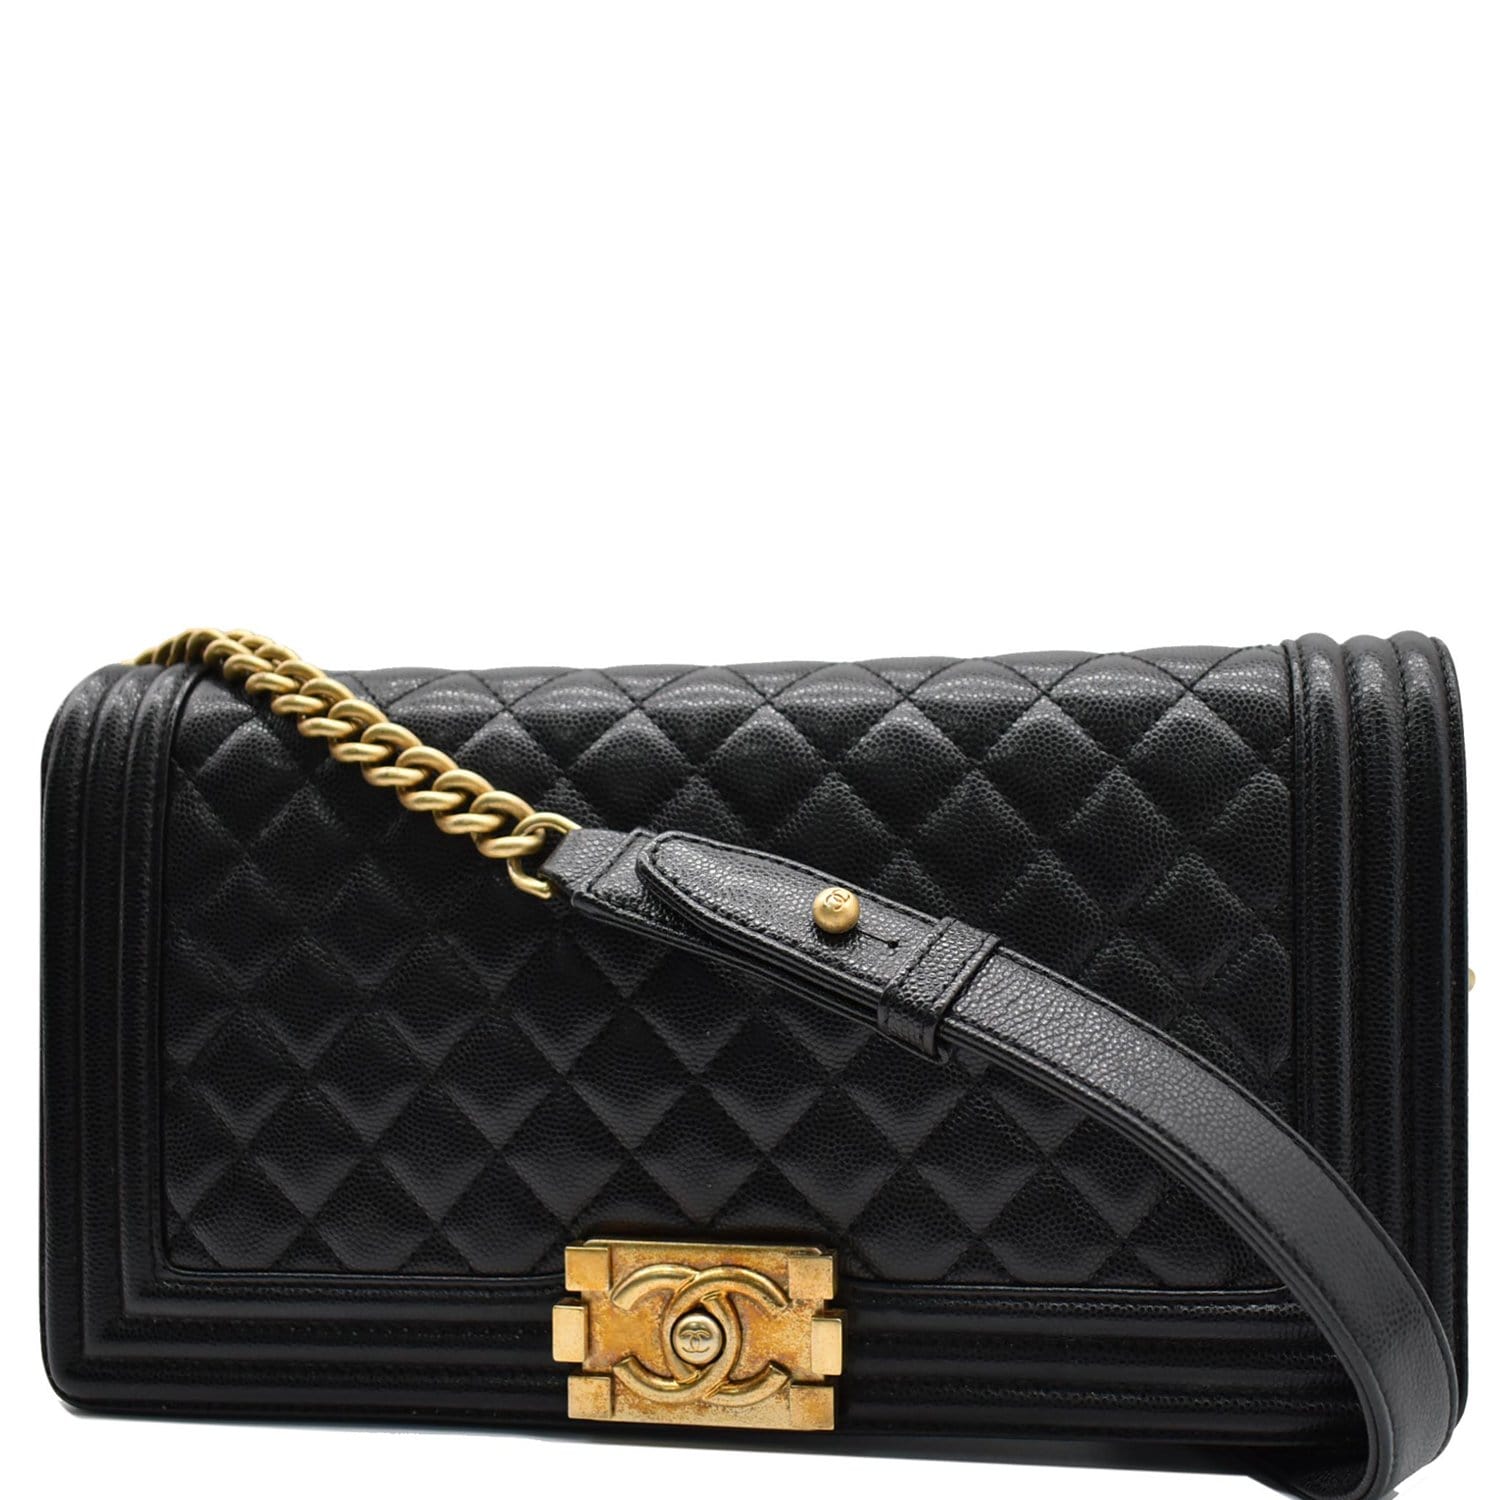 Chanel Medium Boy Flap Caviar Leather Bag DDH